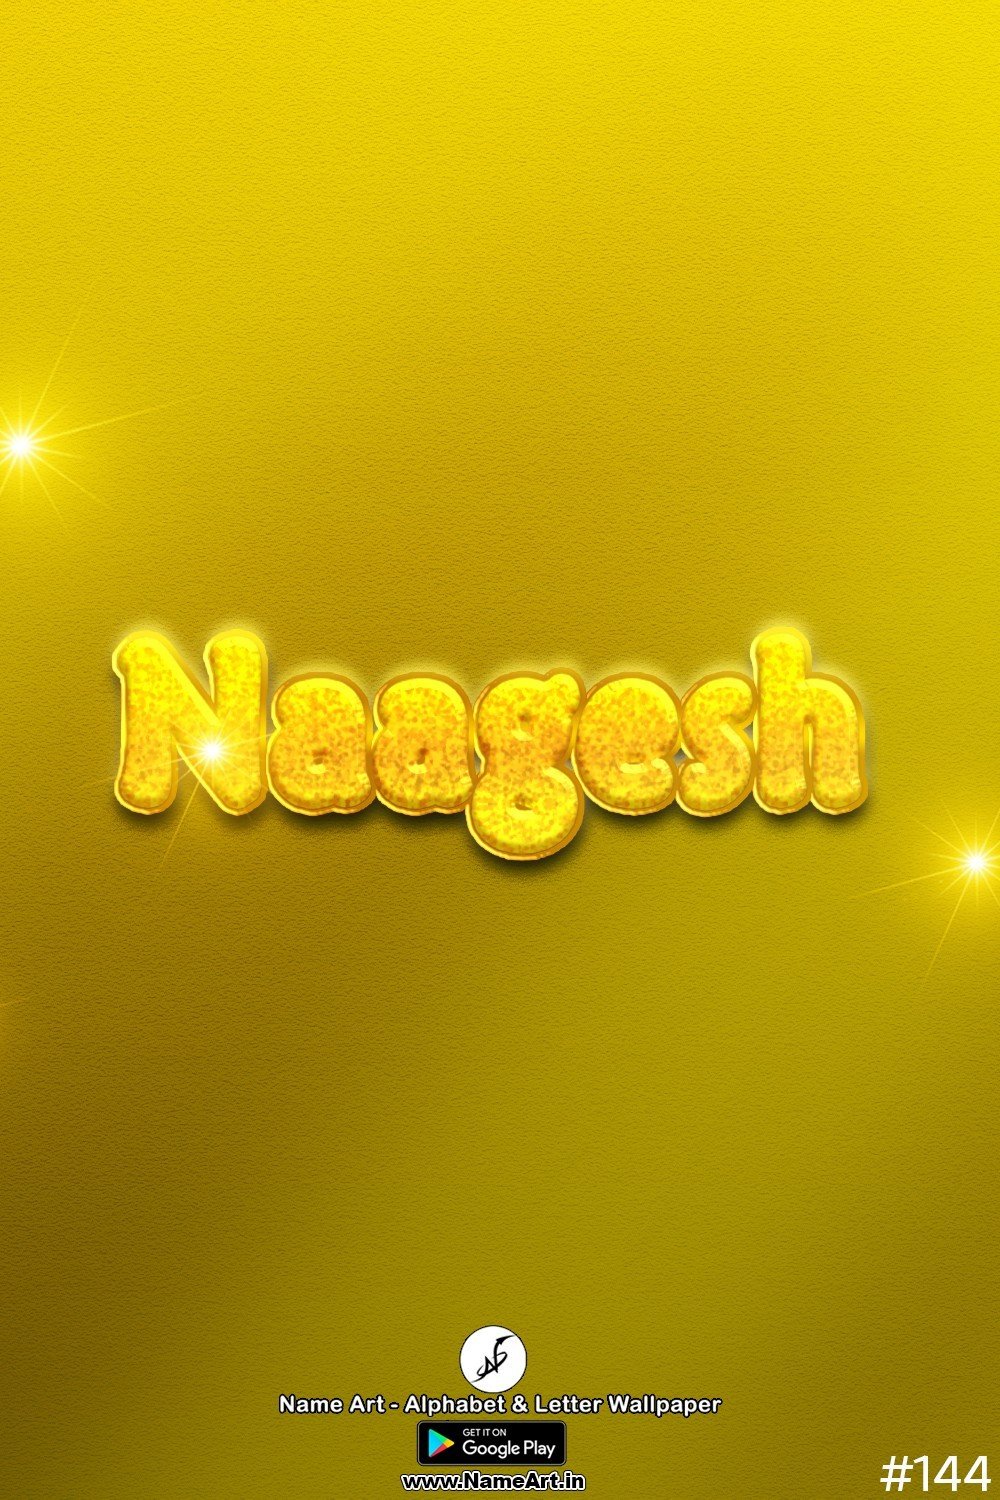 Naagesh | Whatsapp Status Naagesh | Happy Birthday Naagesh !! | New Whatsapp Status Naagesh Images |